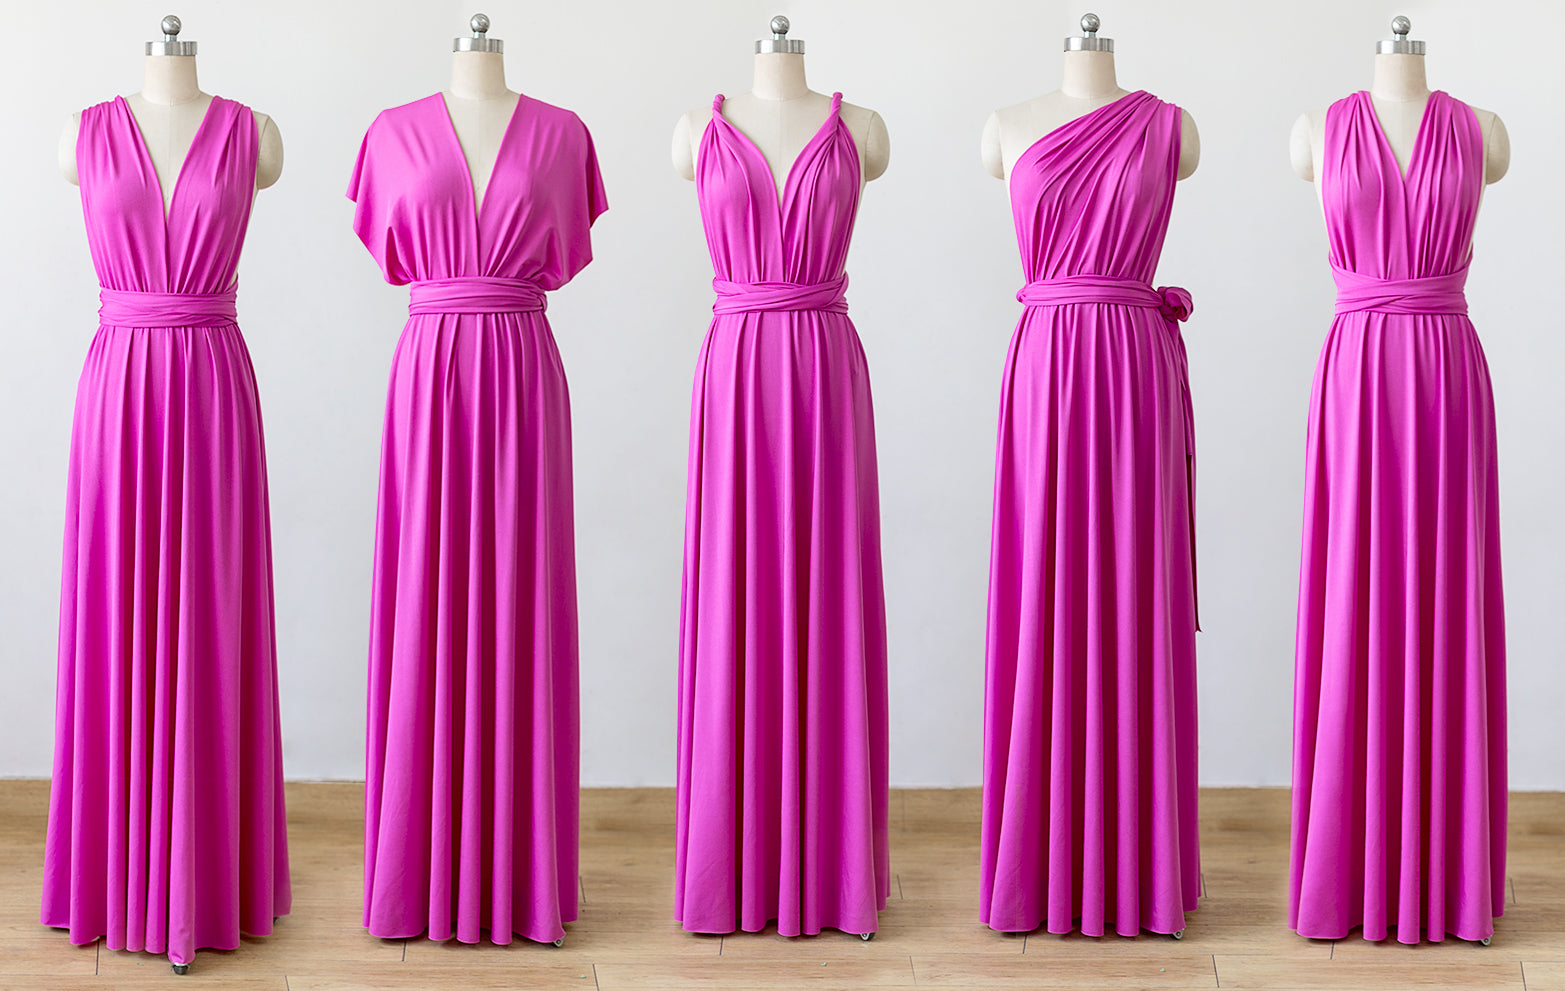 Hot Pink Convertible Bridesmaid Dresses ...